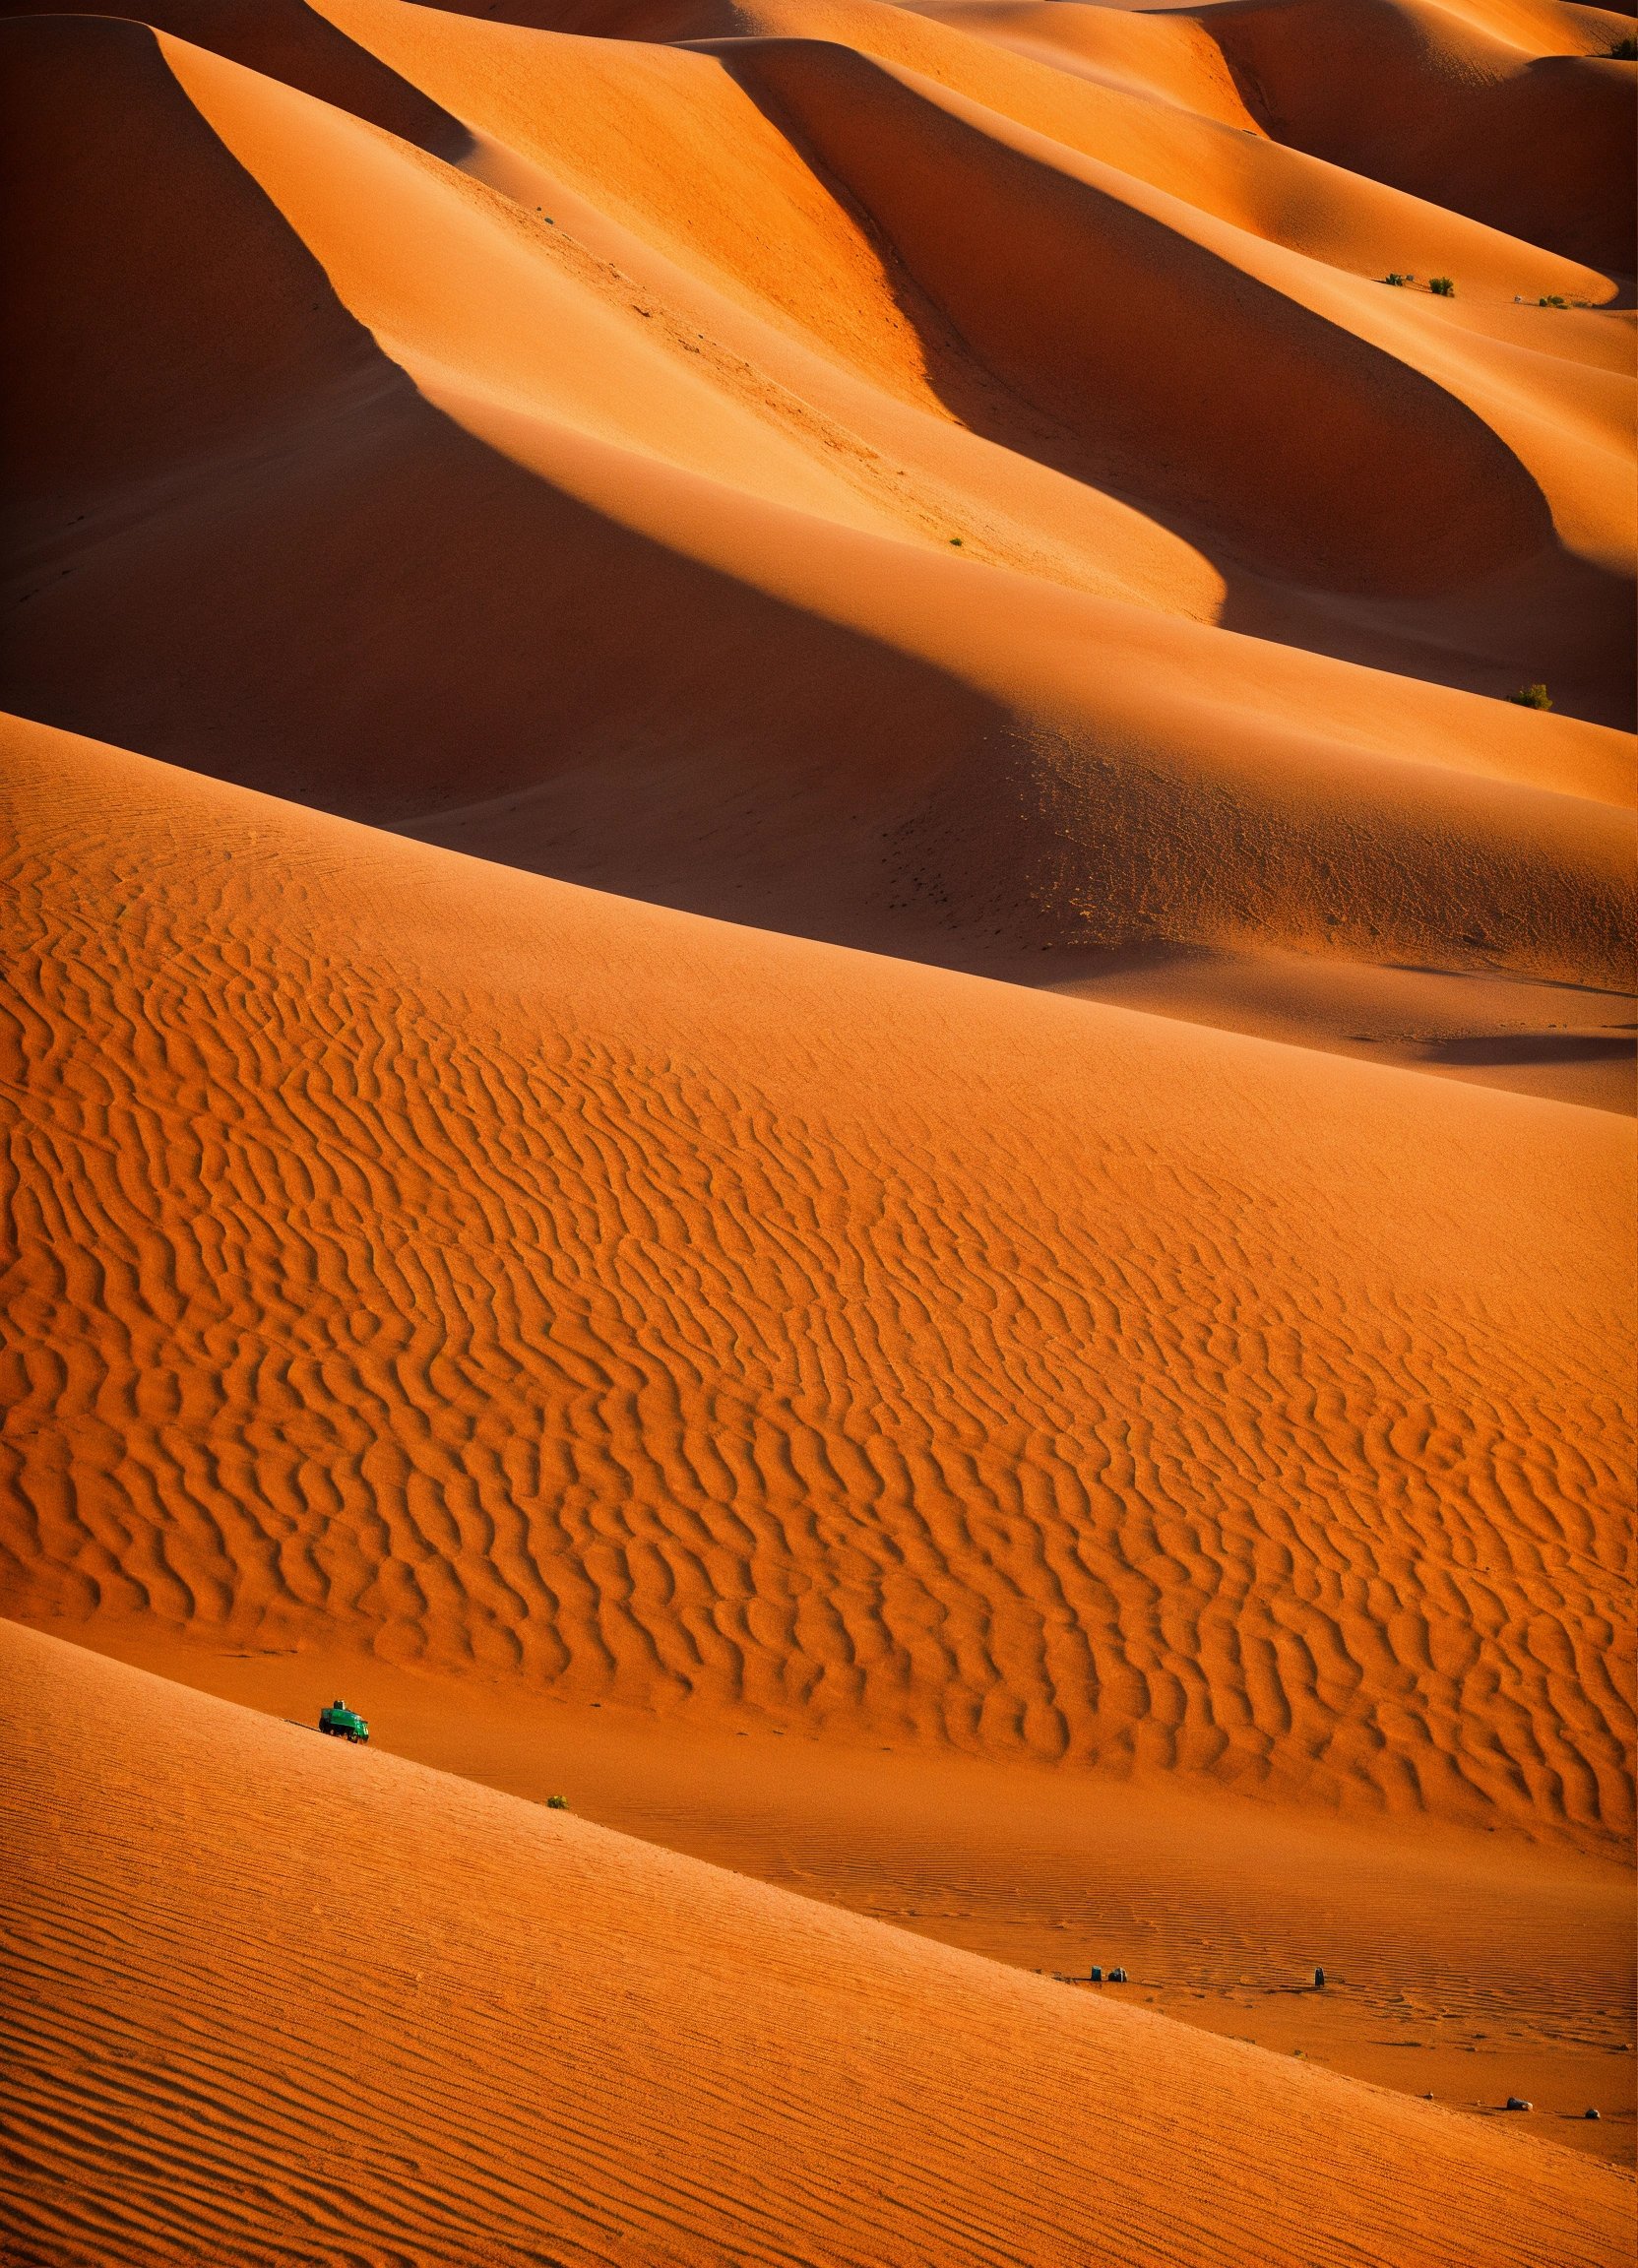 A pattern of desert